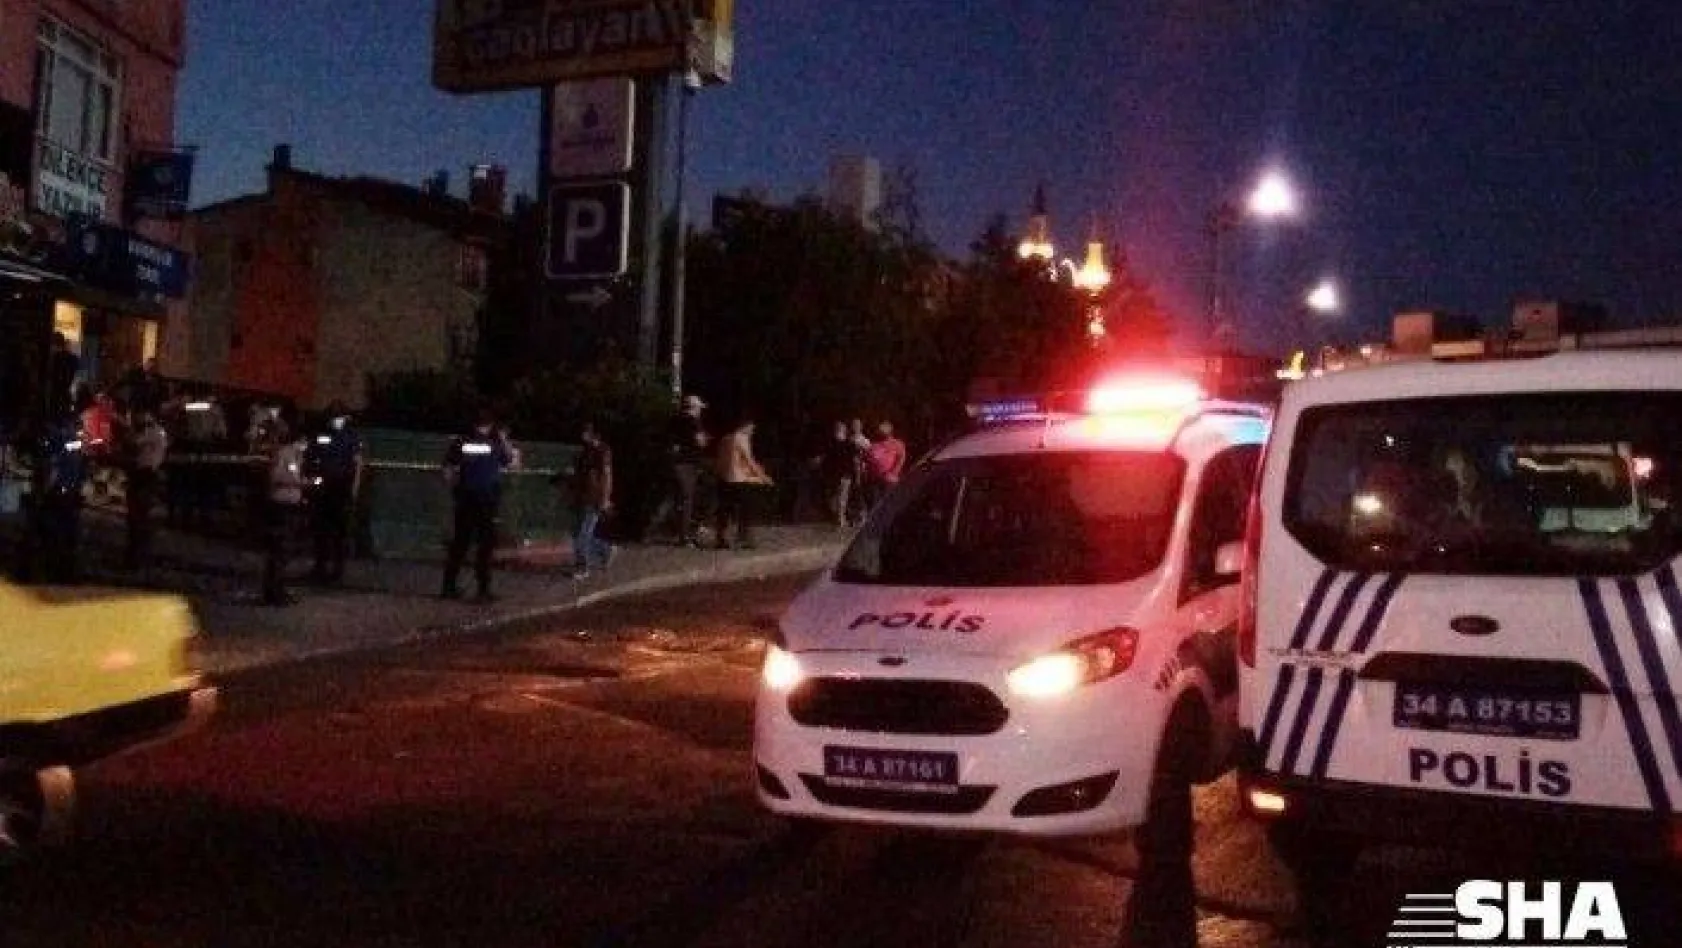 İstanbul Adalet Sarayı'nın karşısında silahlı yaralama